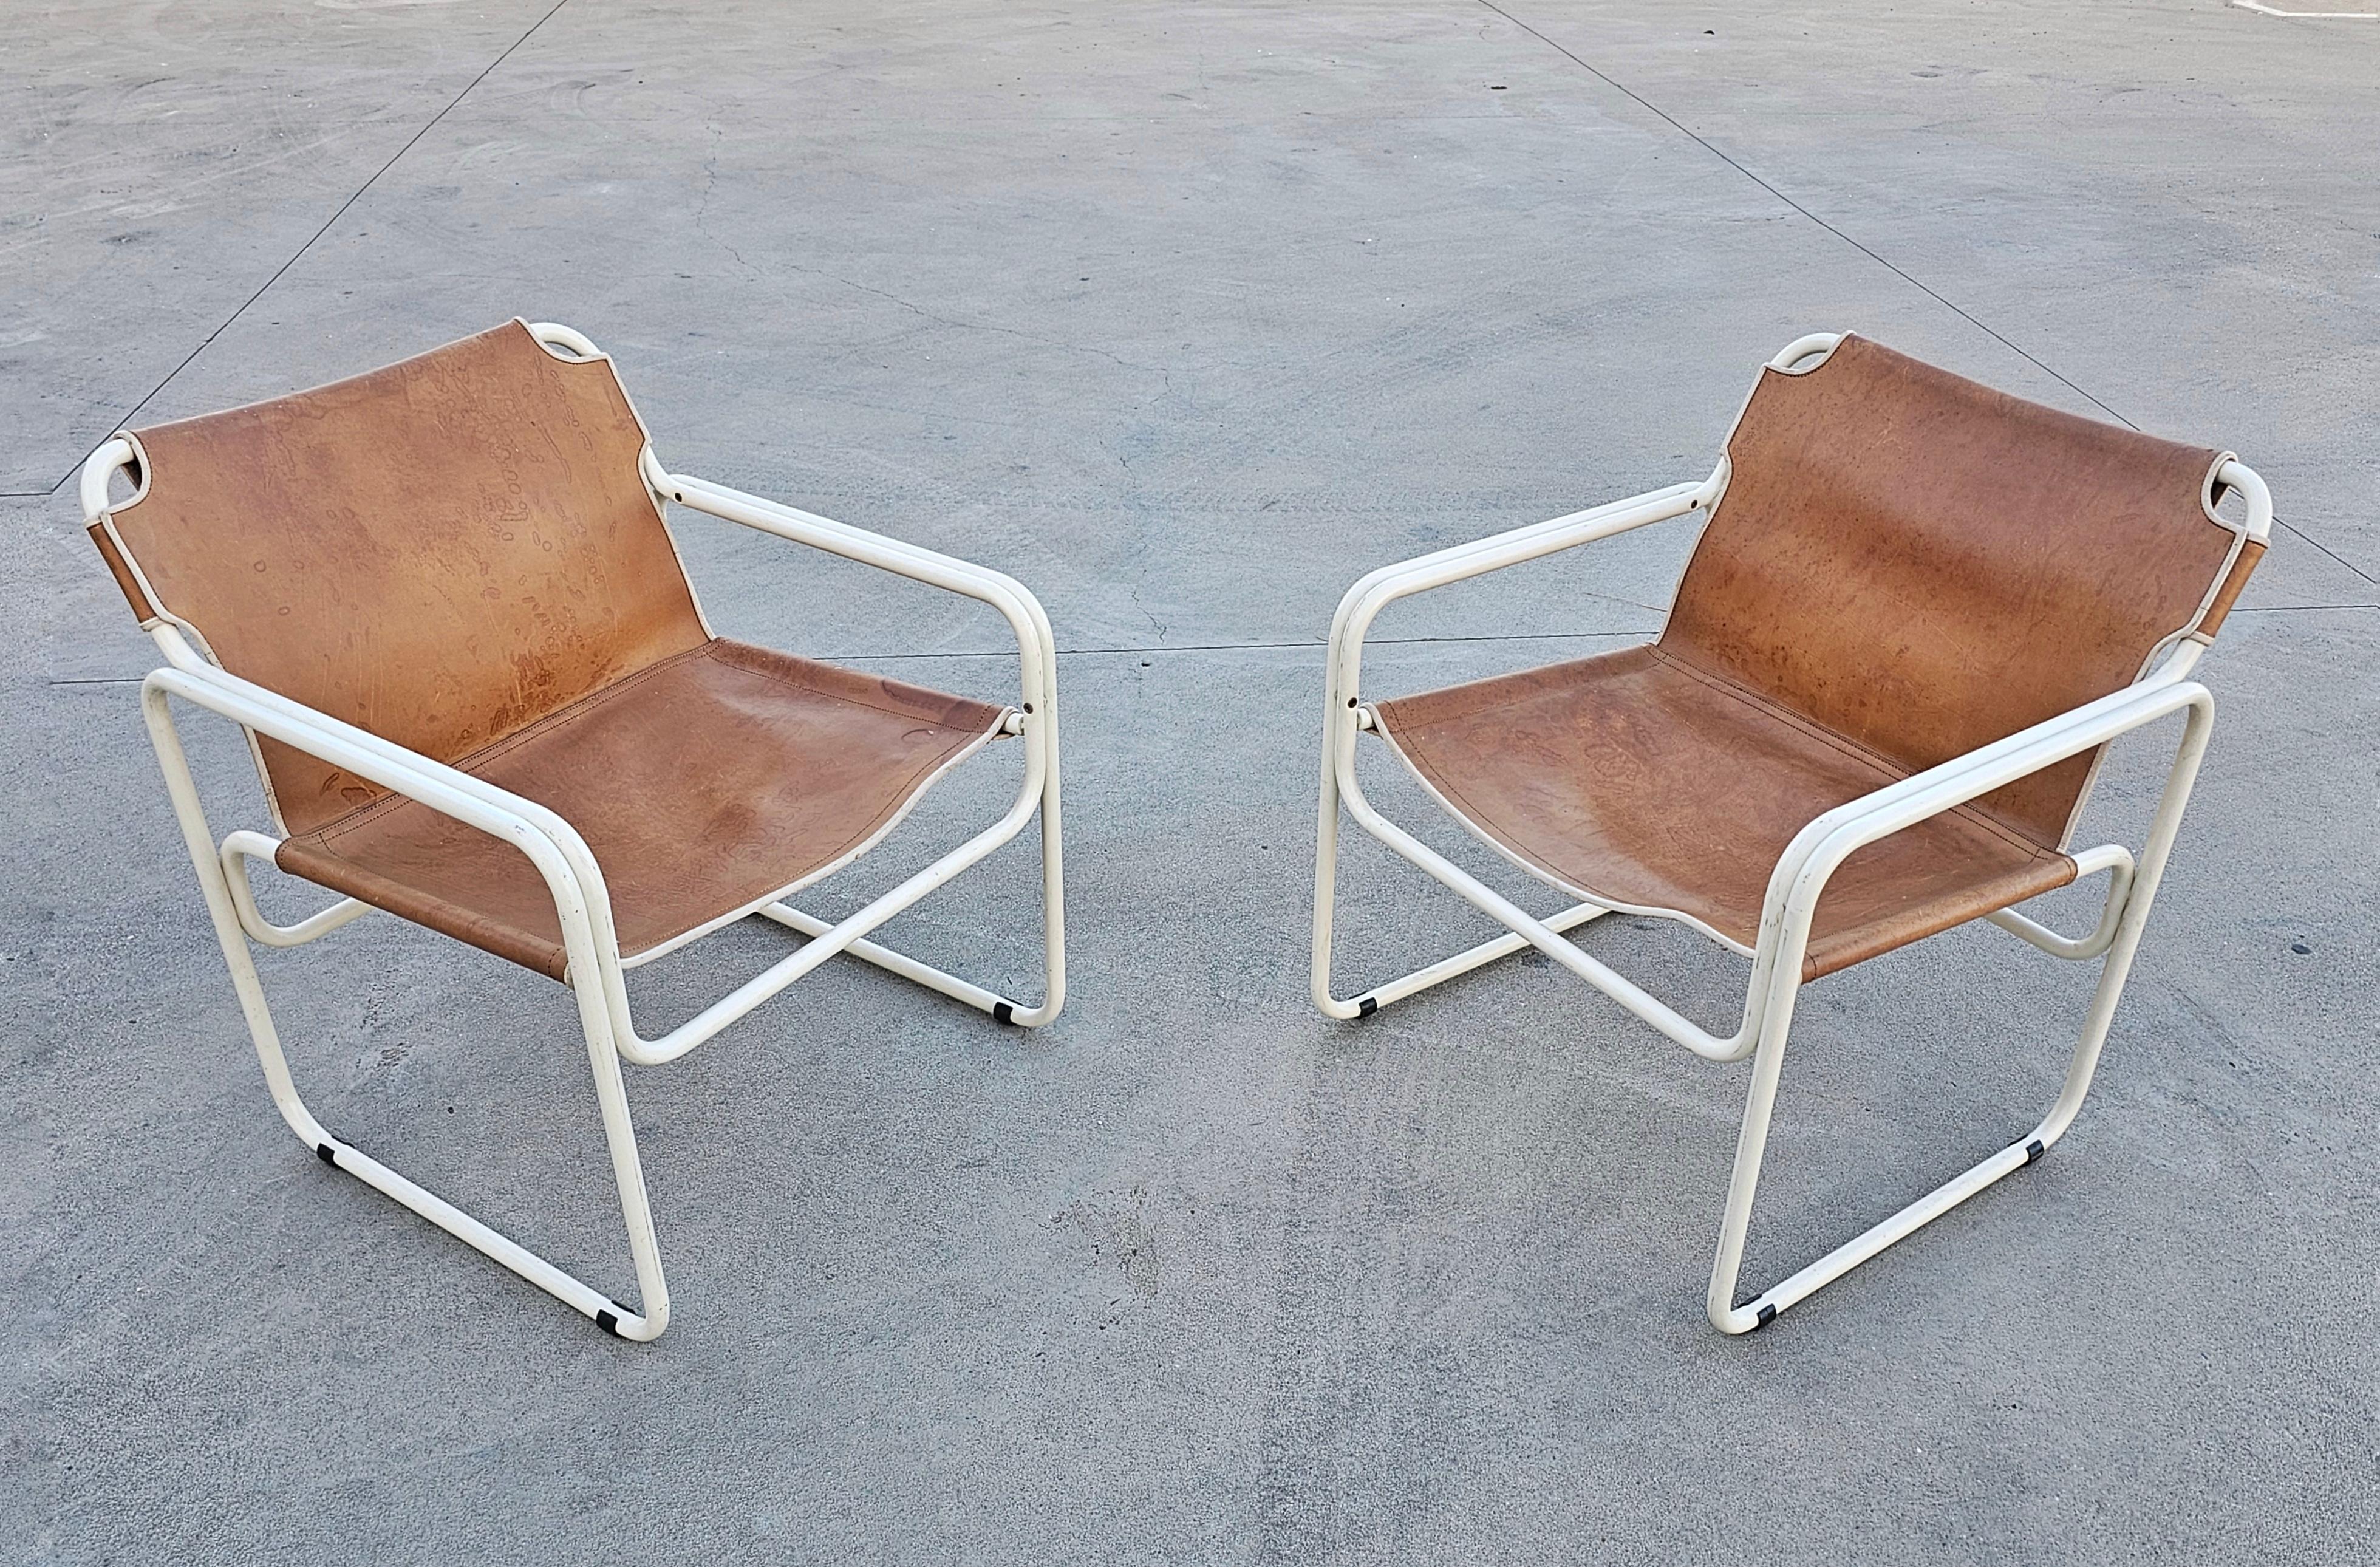 Vous trouverez dans cette annonce une paire de chaises en cuir tubulaire de style Bauhaus fabriquées par Jox Interni. Ils sont dotés d'un cadre blanc cassé et de sièges en cuir cognac. Fabriqué aux Pays-Bas dans les années 1970.

Bon état vintage